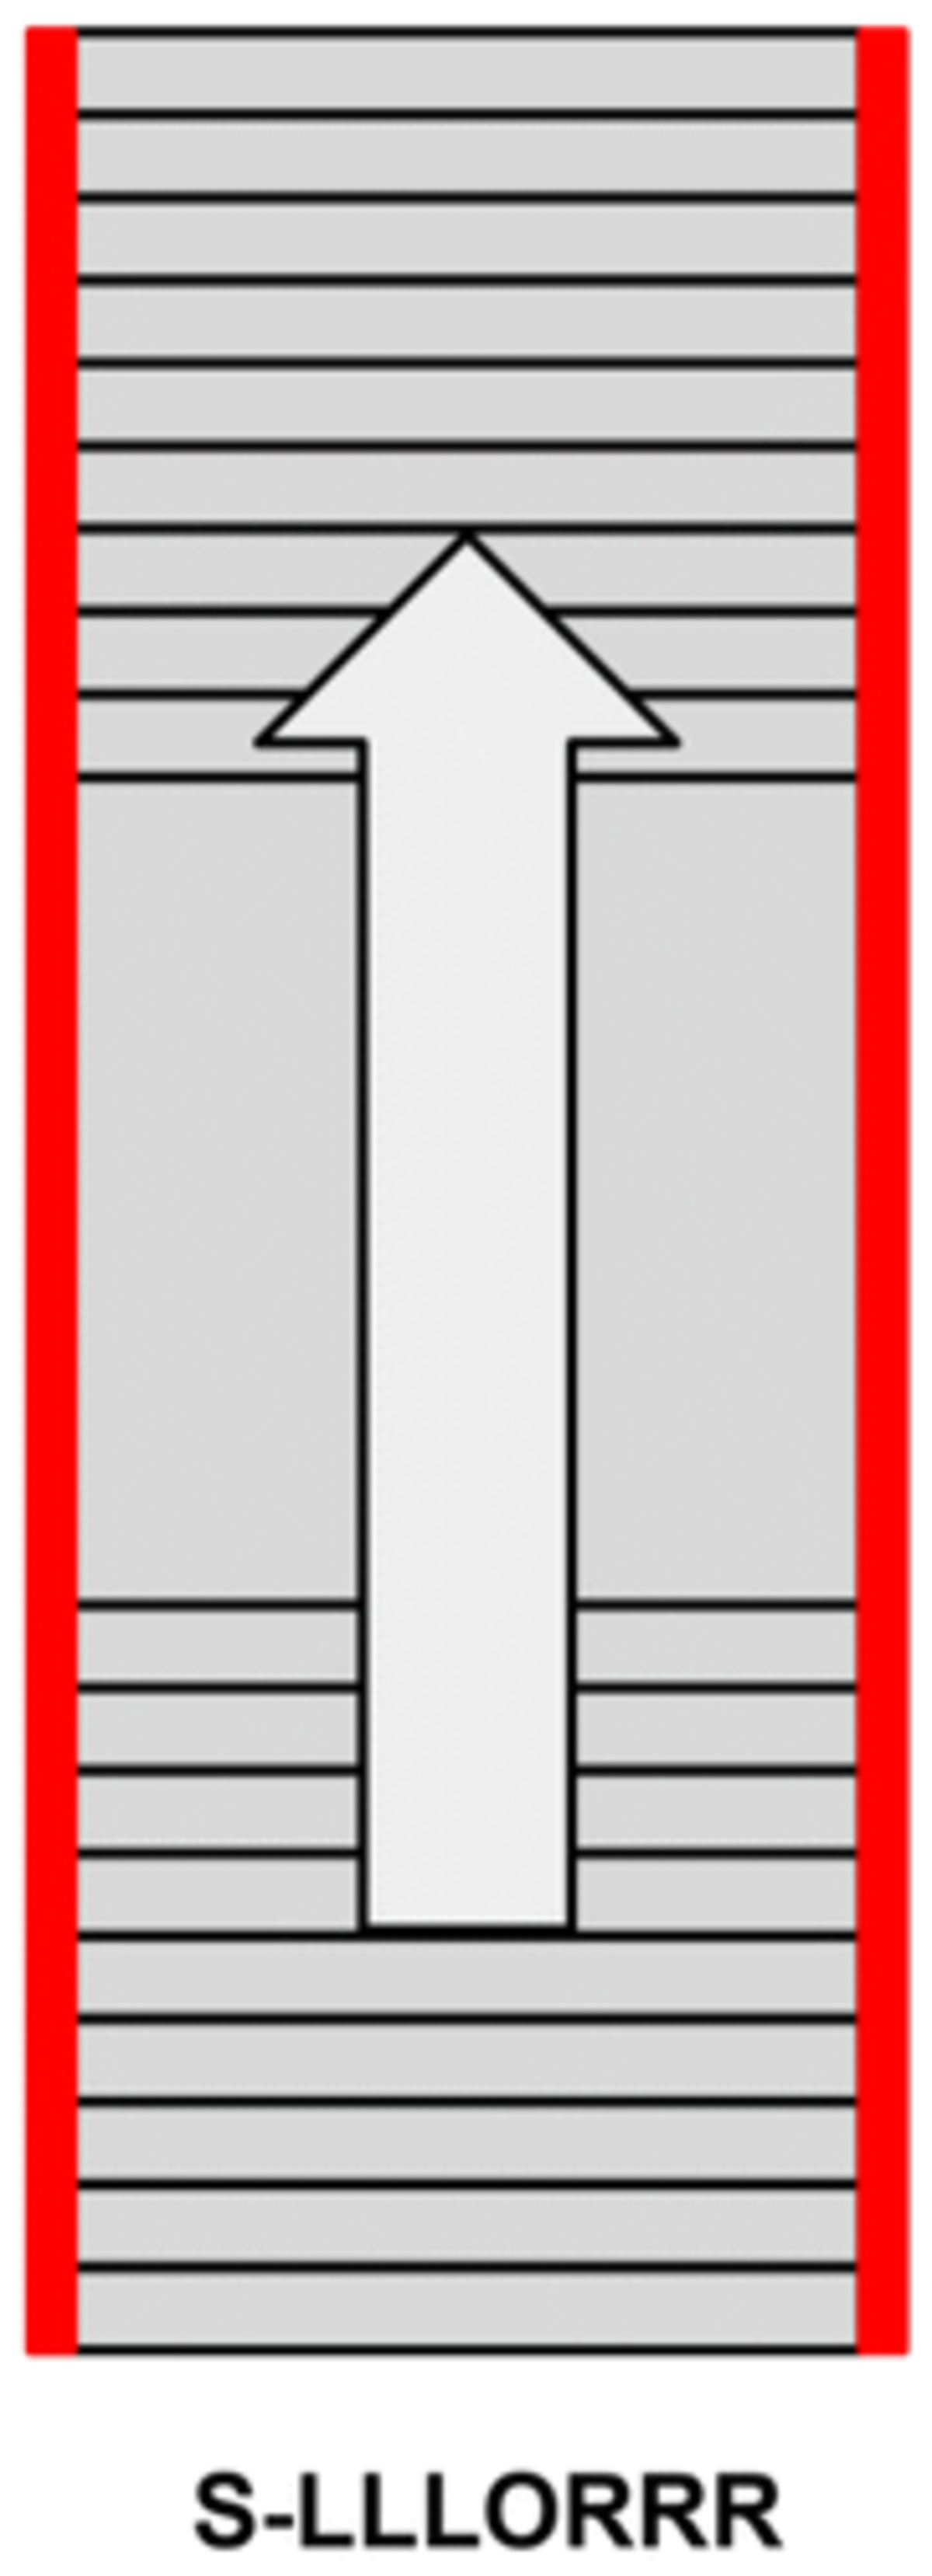 Escalera con rellano seguida de una escalera recta: pasamanos y barandilla en ambos lados